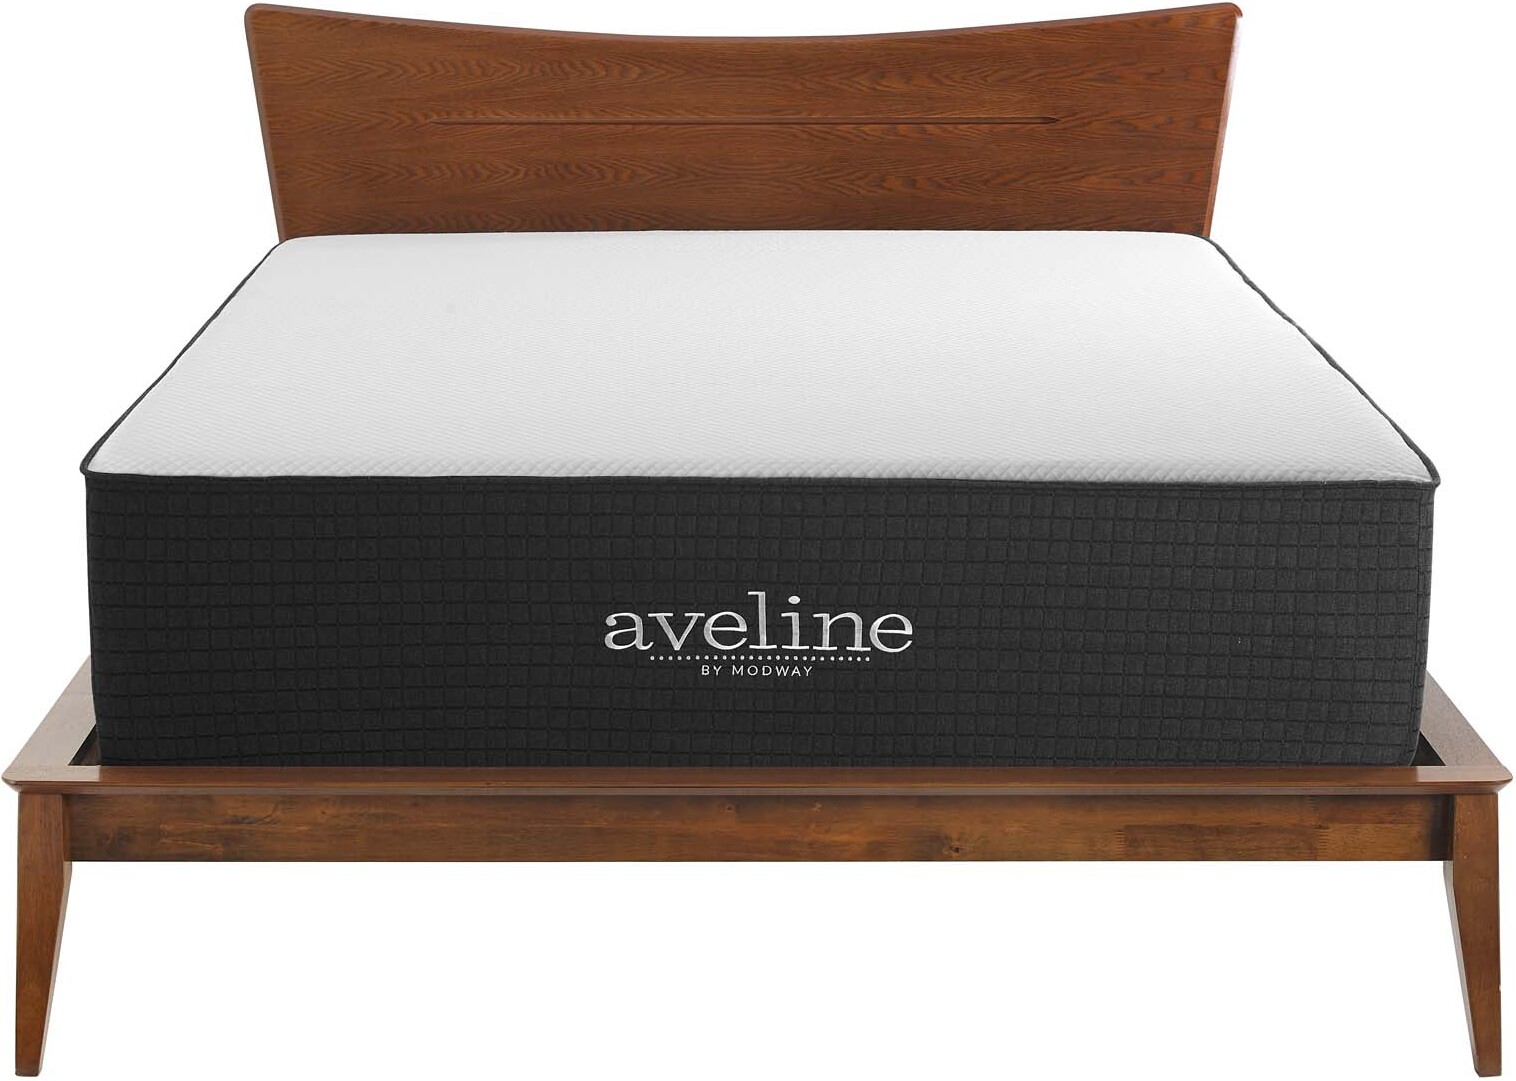 aveline mattress memory foam sleeplikethedead